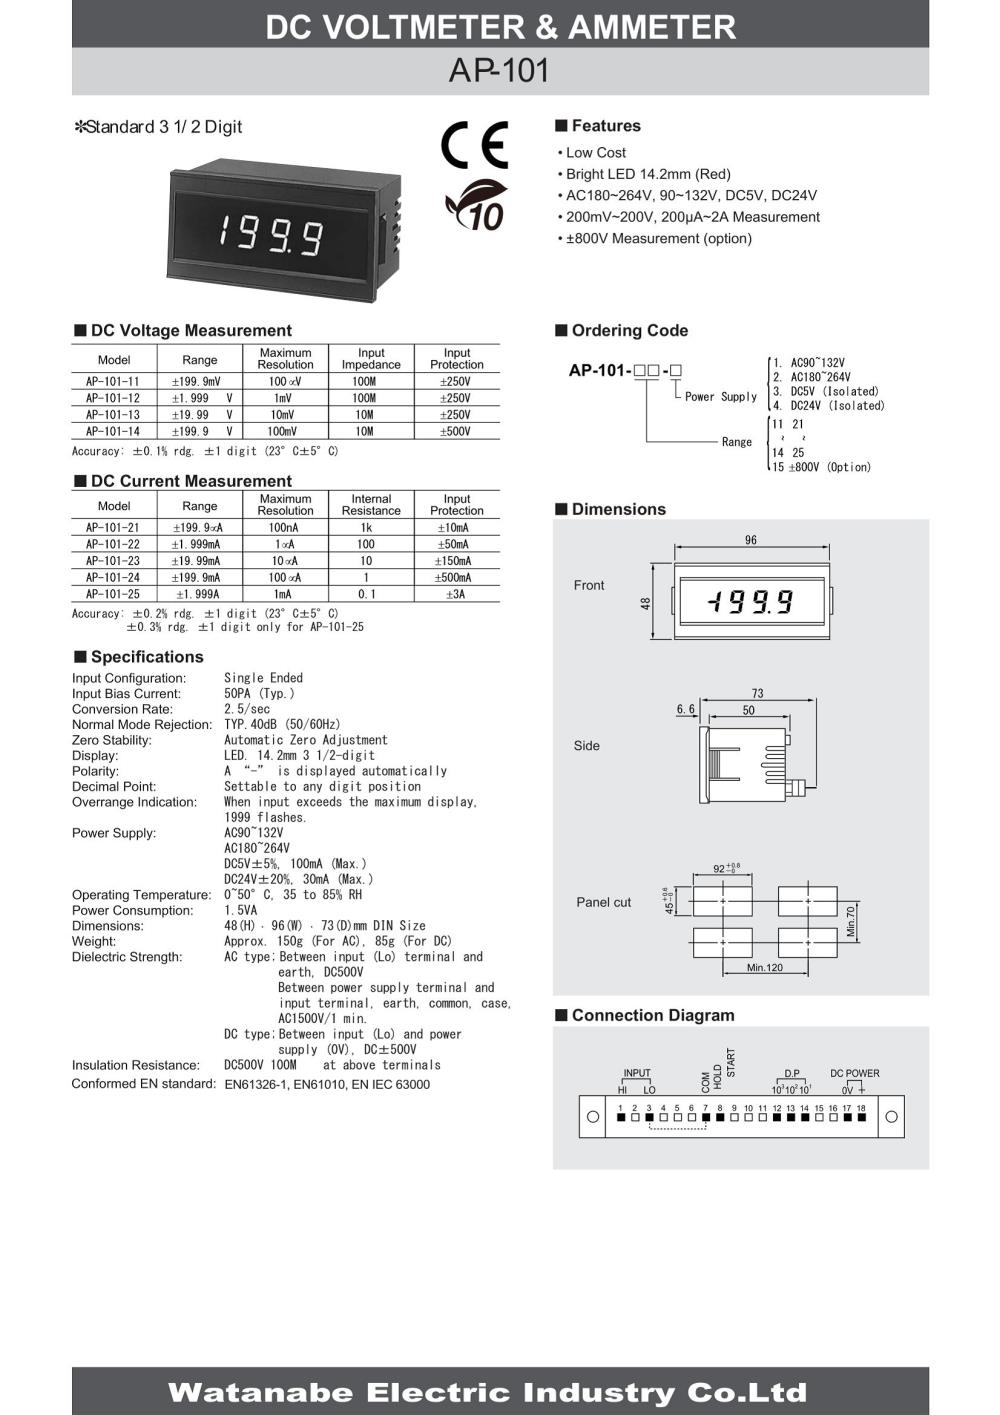 WATANABE Digital Panel Meter AP-101-14 Series